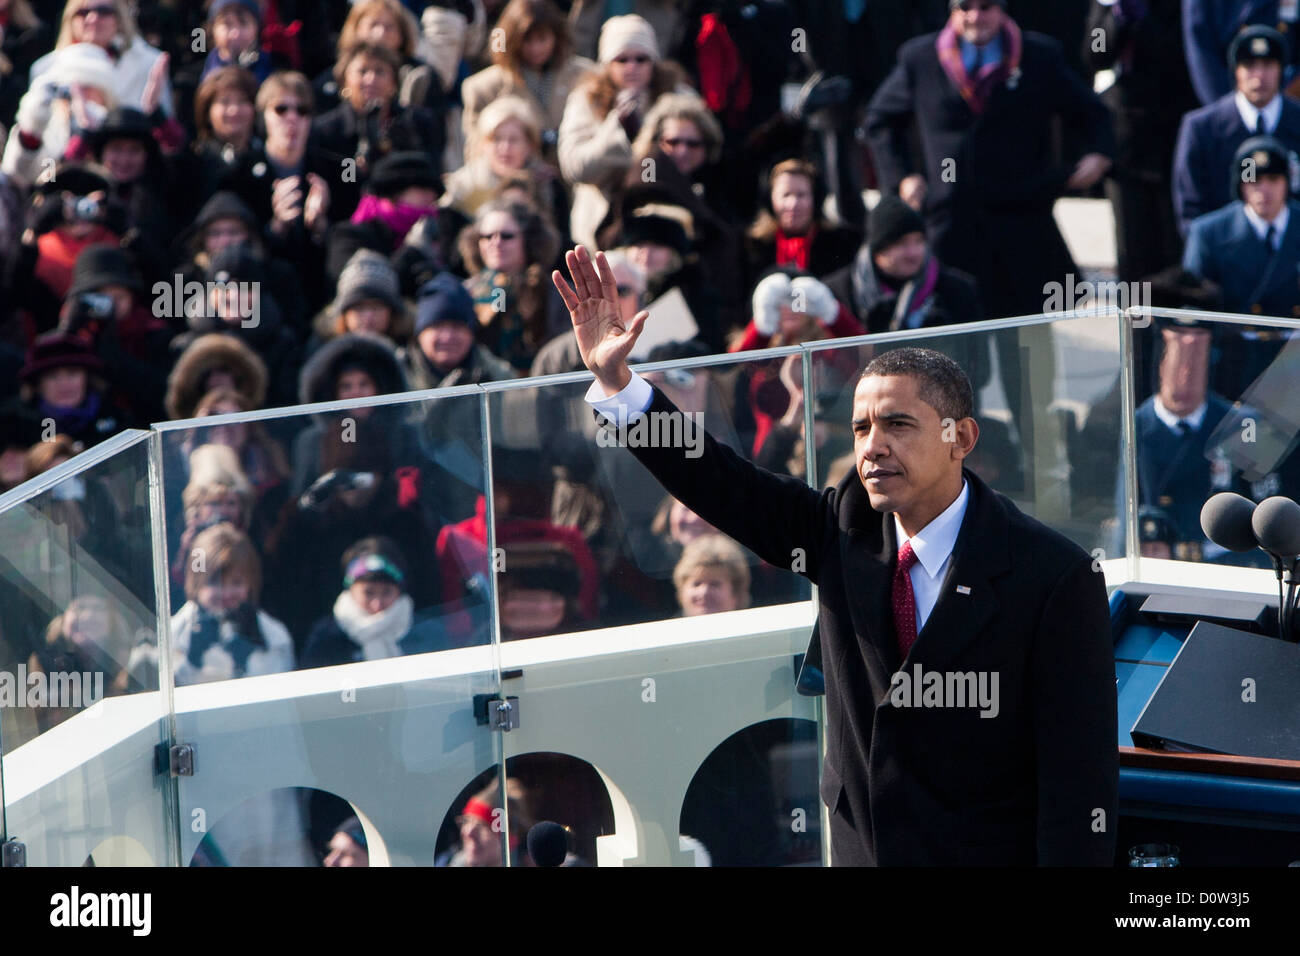 The Inauguration of President Barack Obama, January 20, 2009. Stock Photo